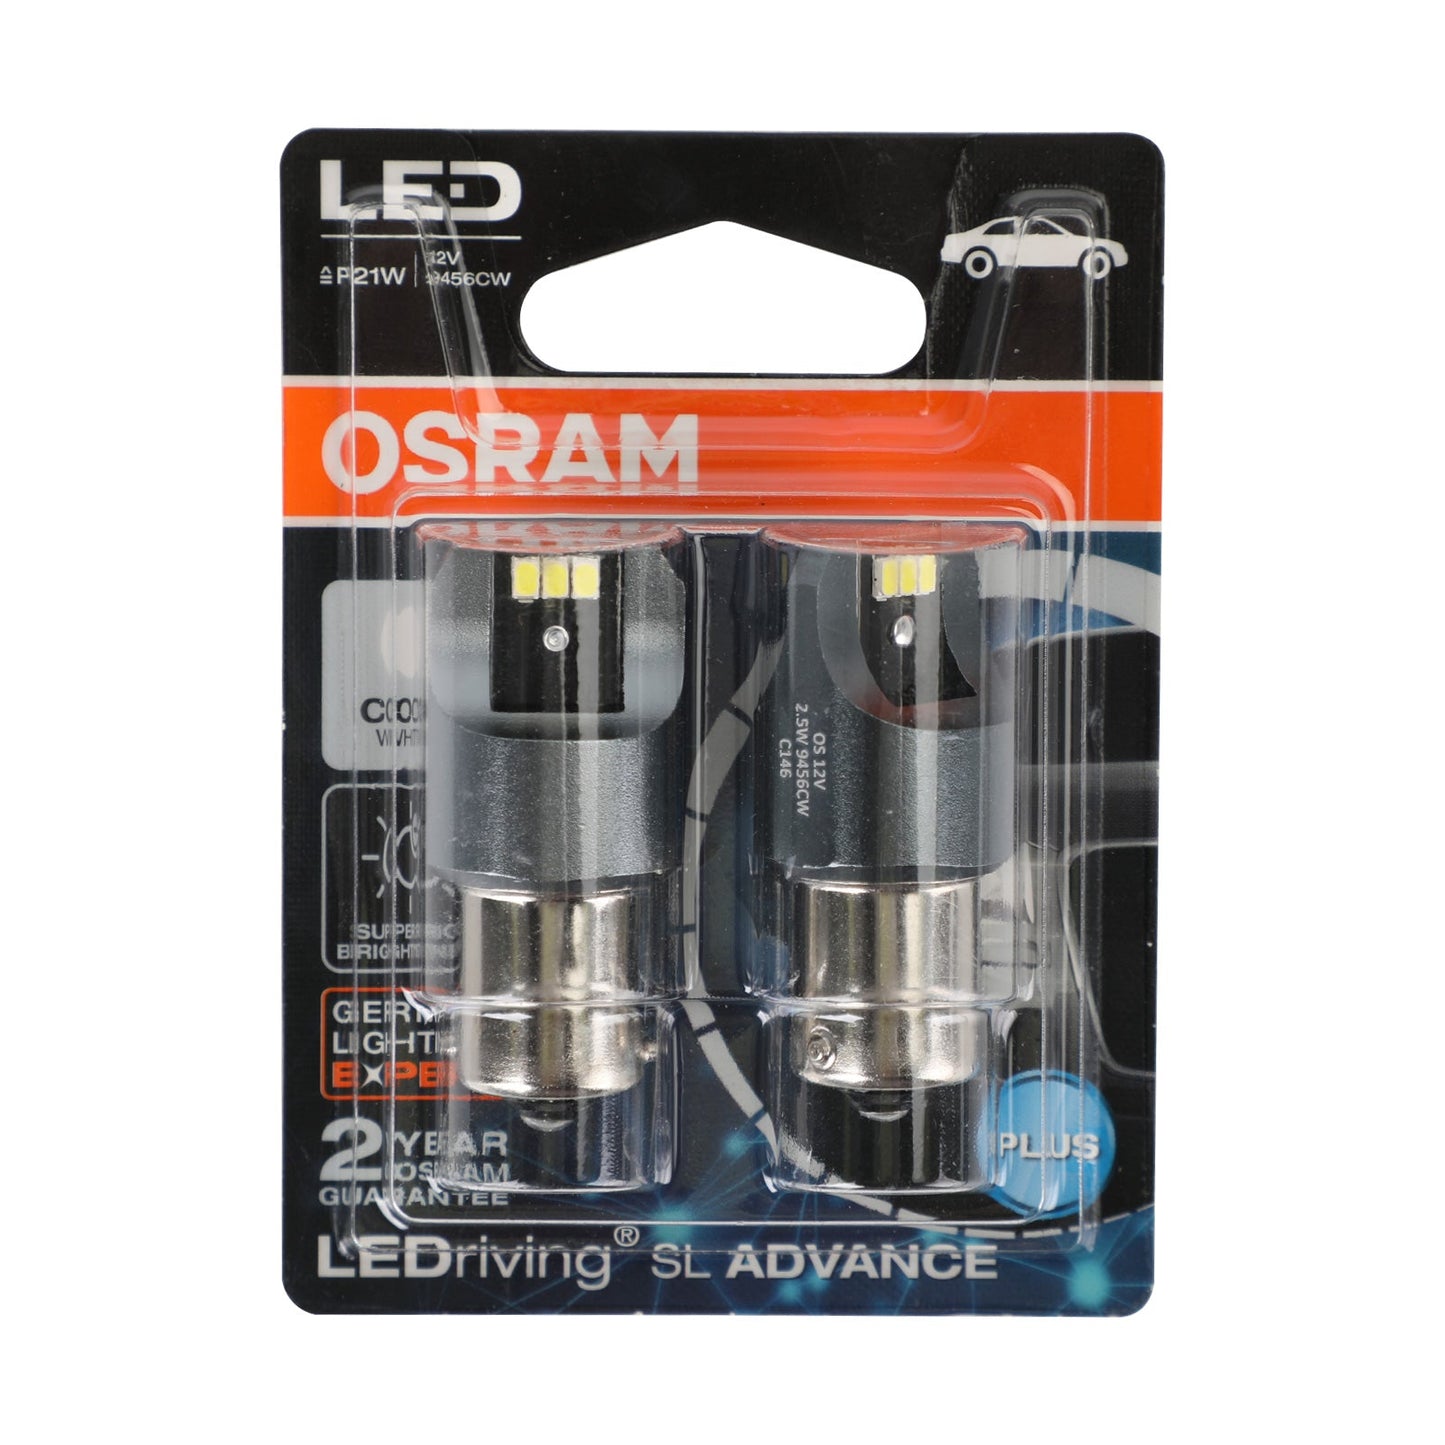 2x Pour OSRAM 9456CW Voiture Auxiliaire Ampoules LED P21W 12V2.5W BA15s Générique